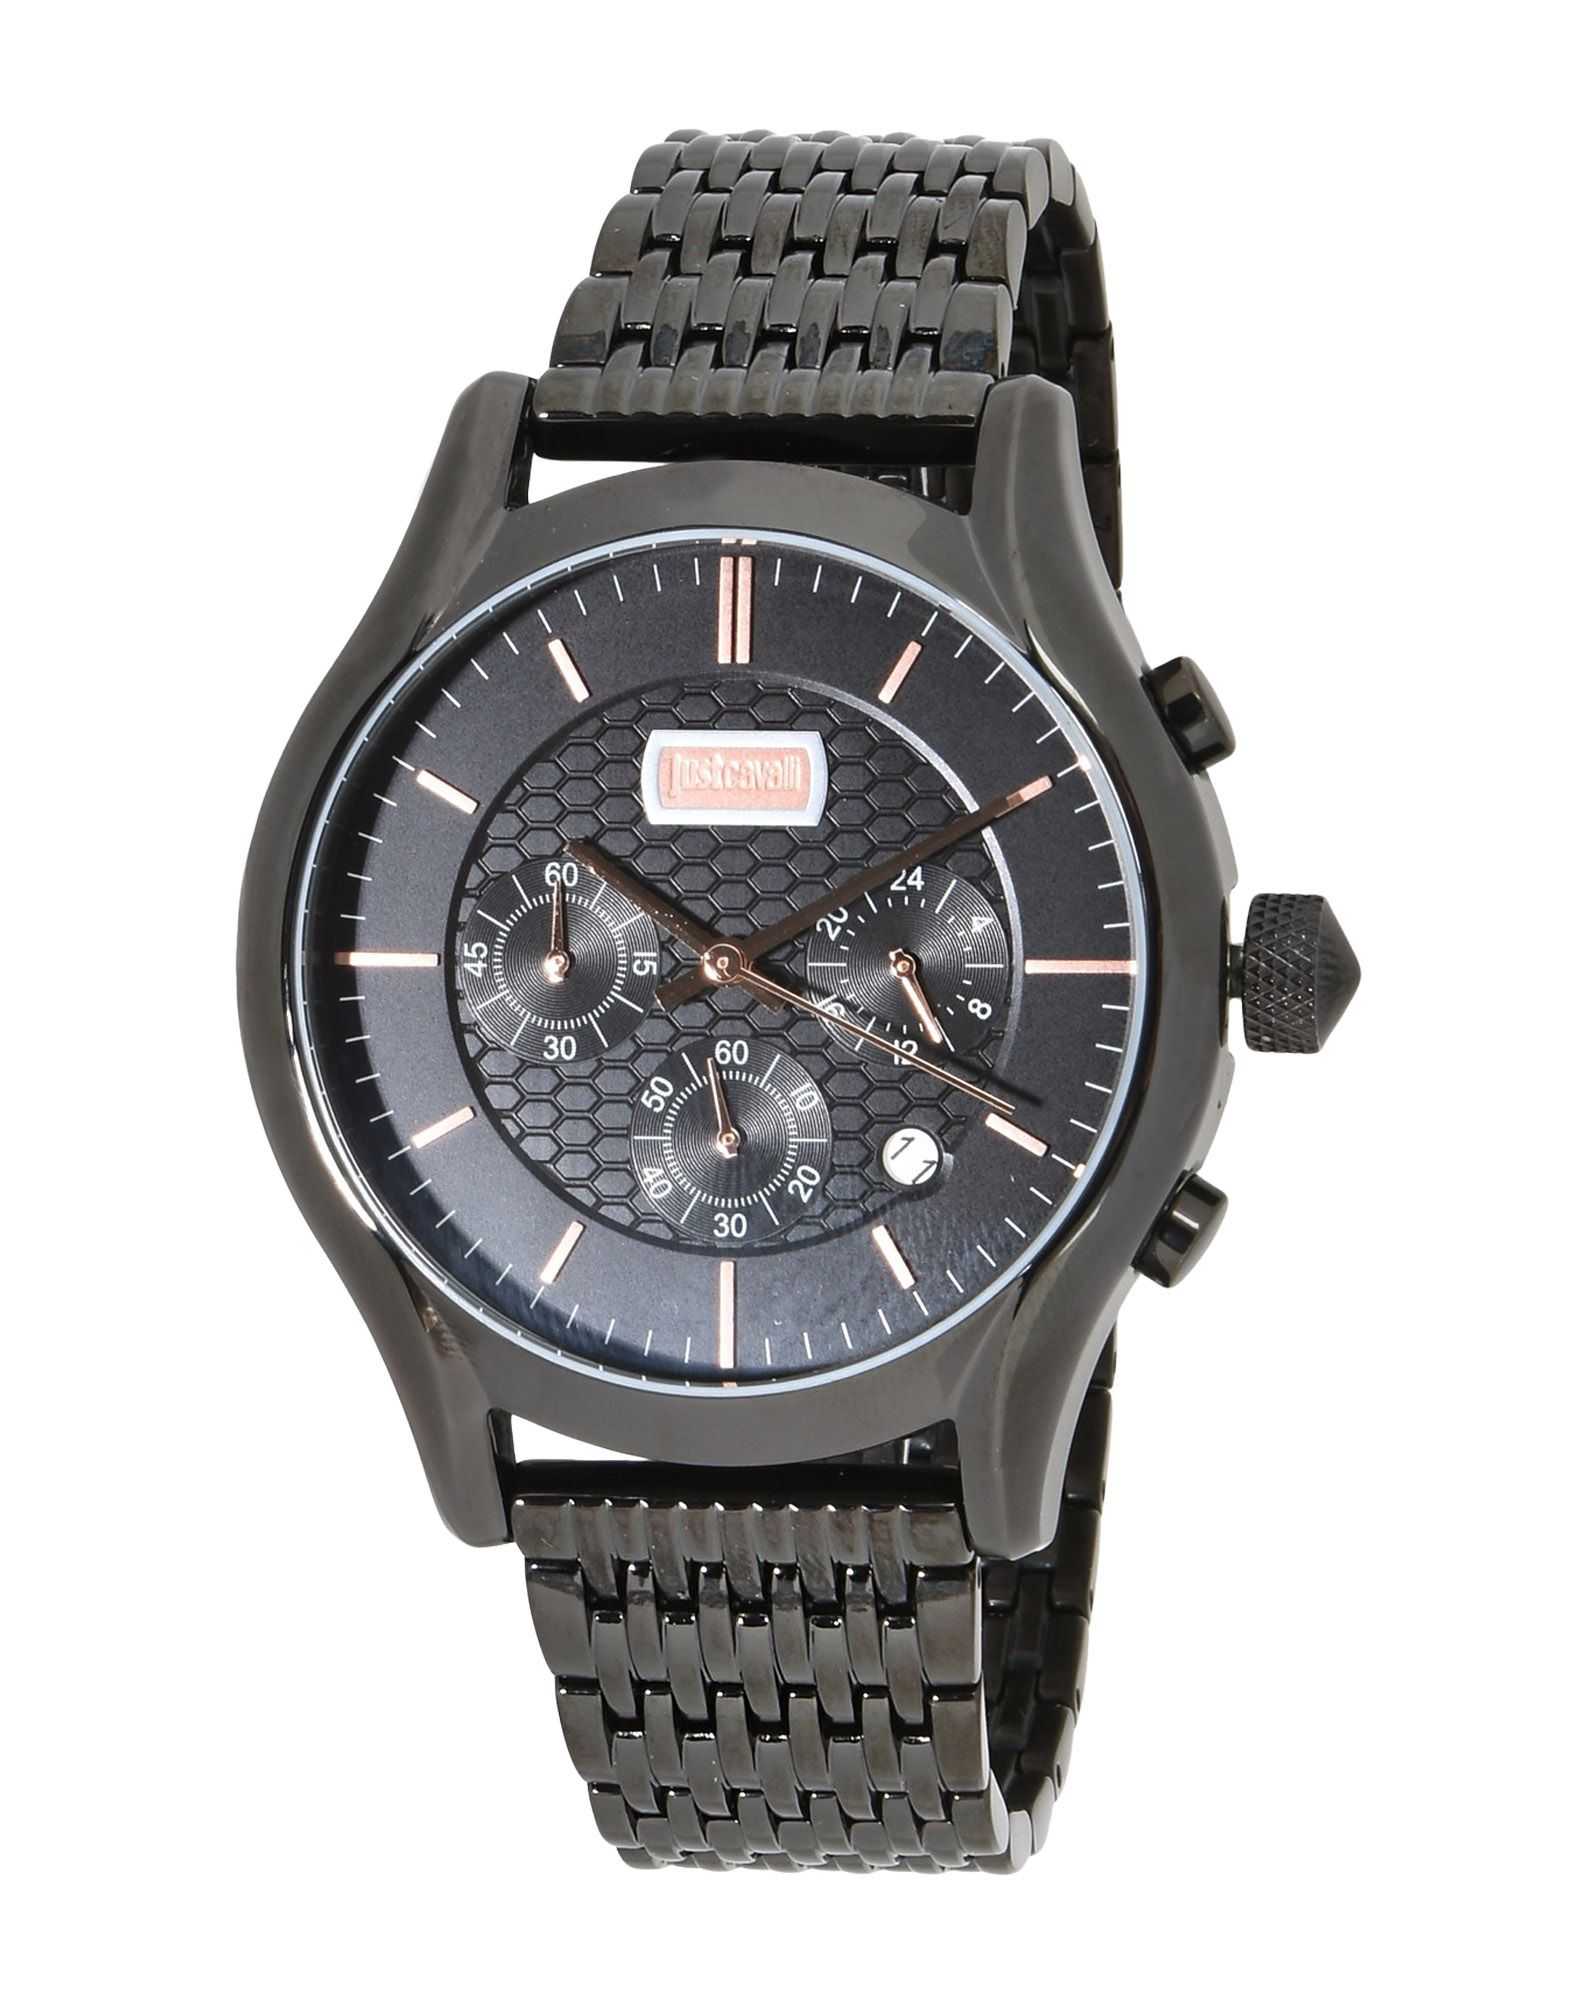 《送料無料》JUST CAVALLI メンズ 腕時計 ブラック ステンレススチール ELEGANT